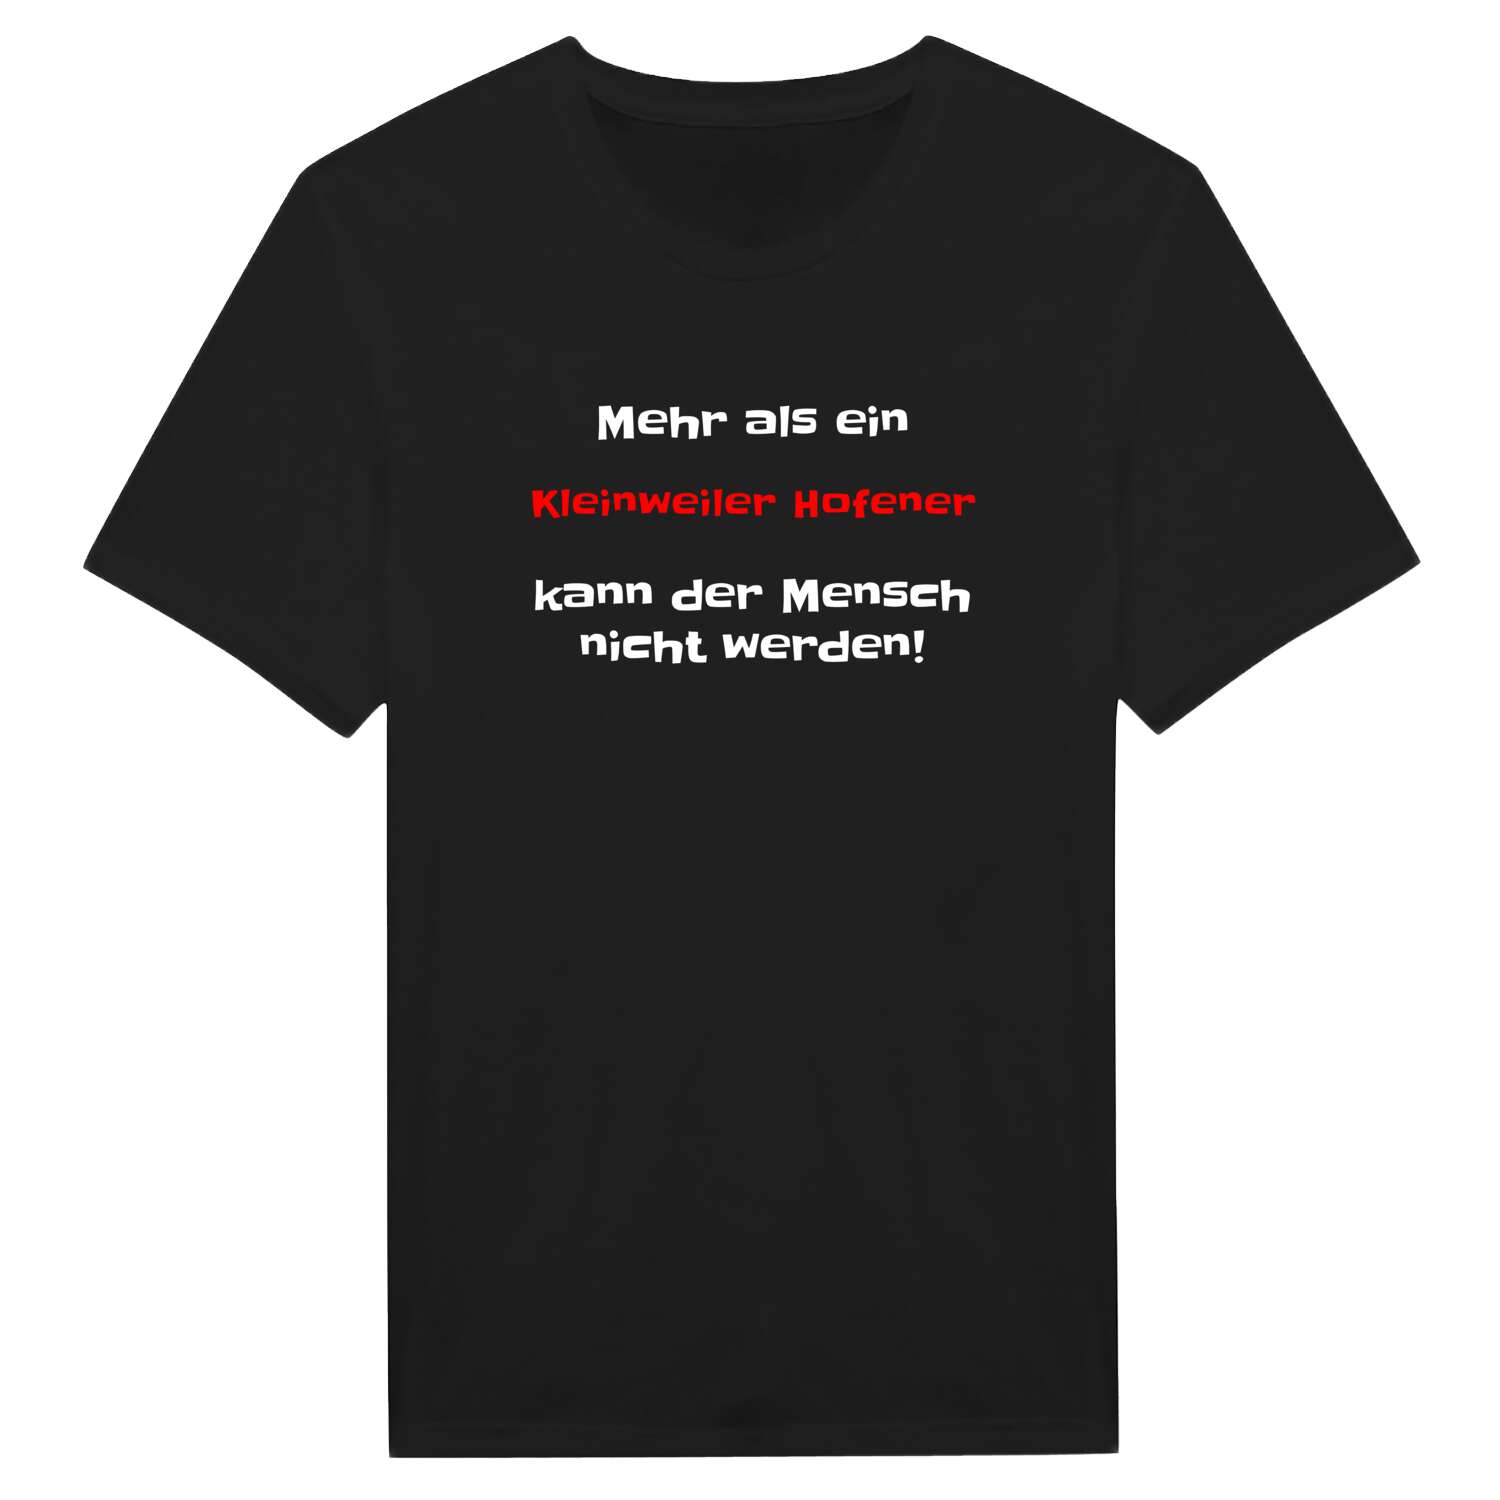 Kleinweiler Hofen T-Shirt »Mehr als ein«